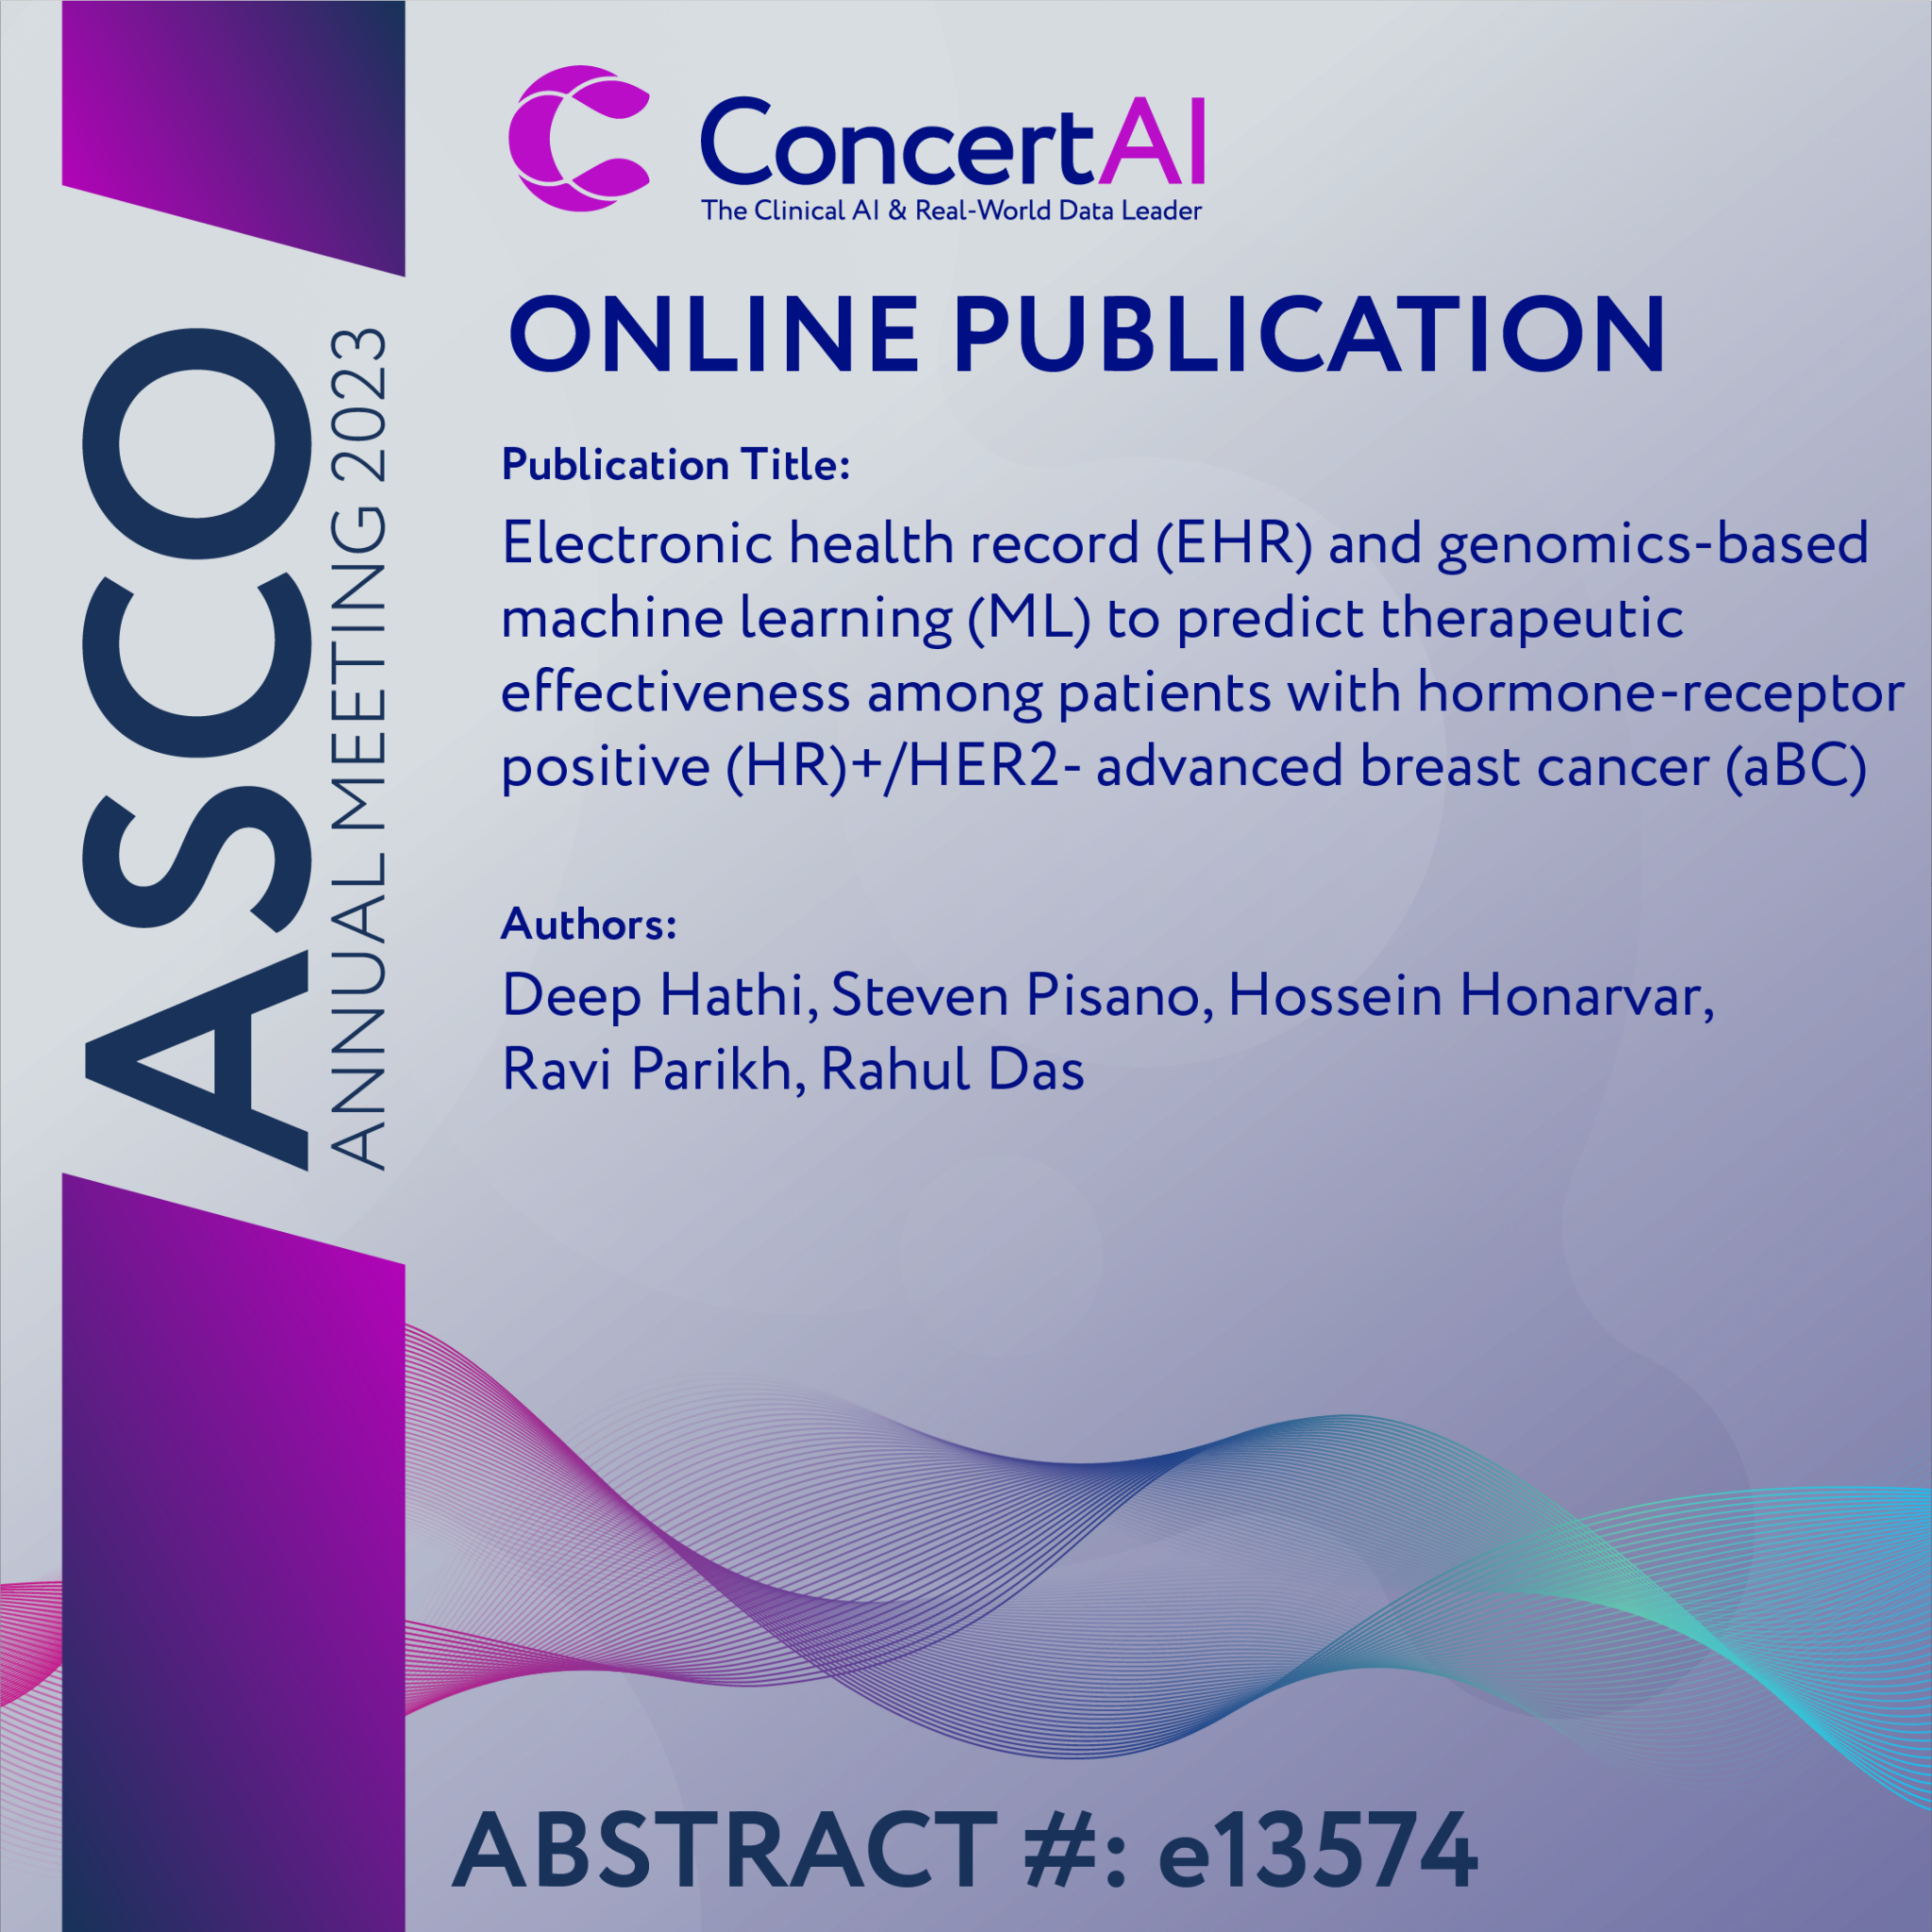 ConcertAI Online Publications 219631